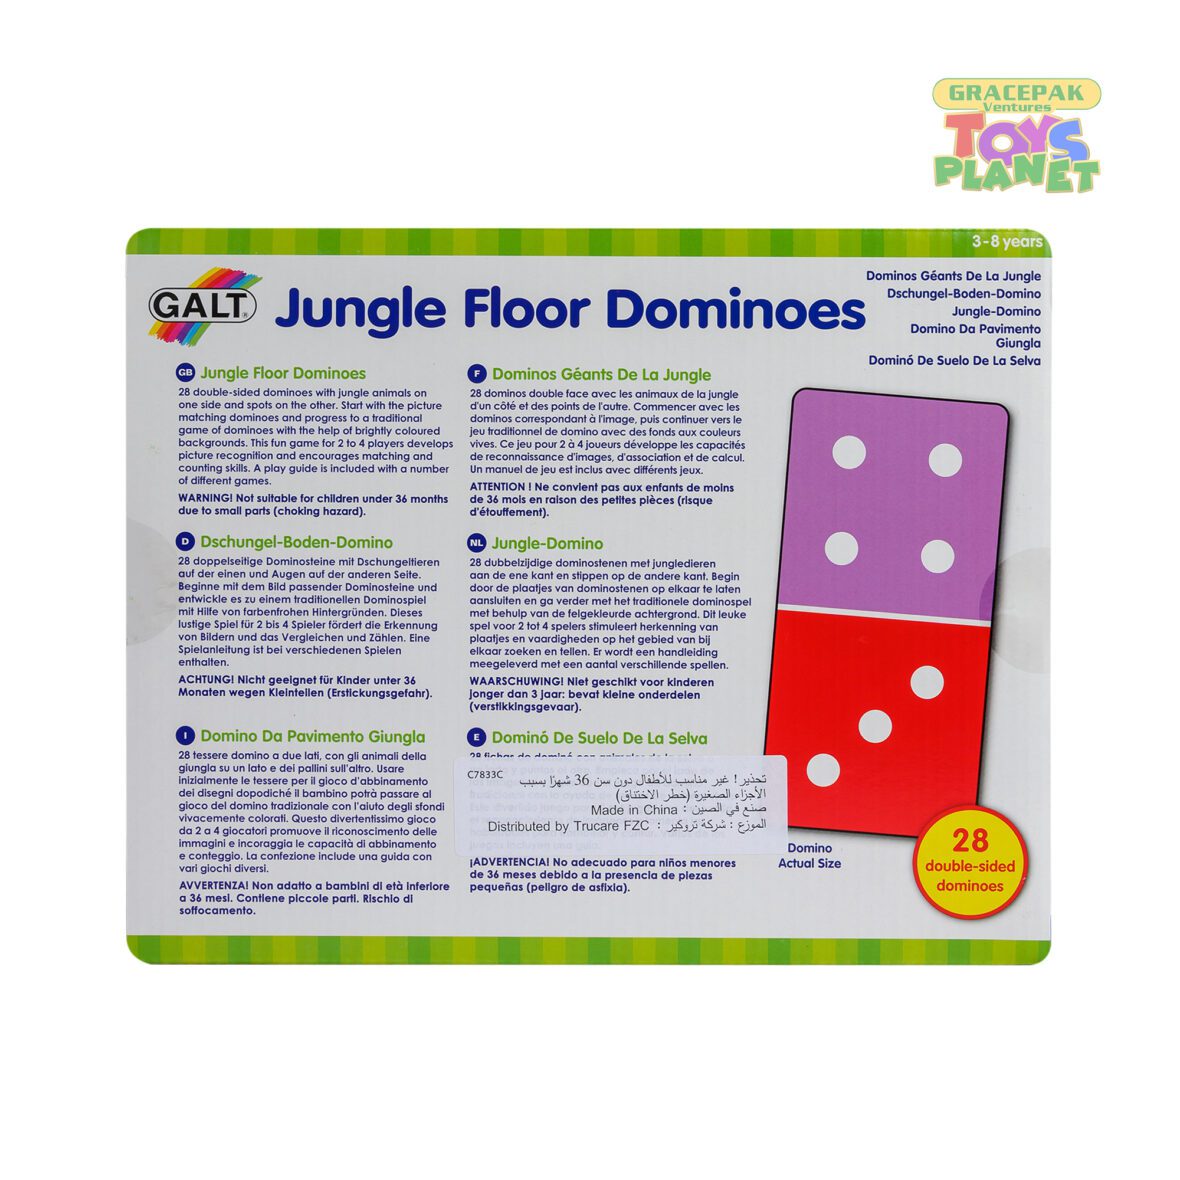 GALT_Jungle Floor Dominoes_2